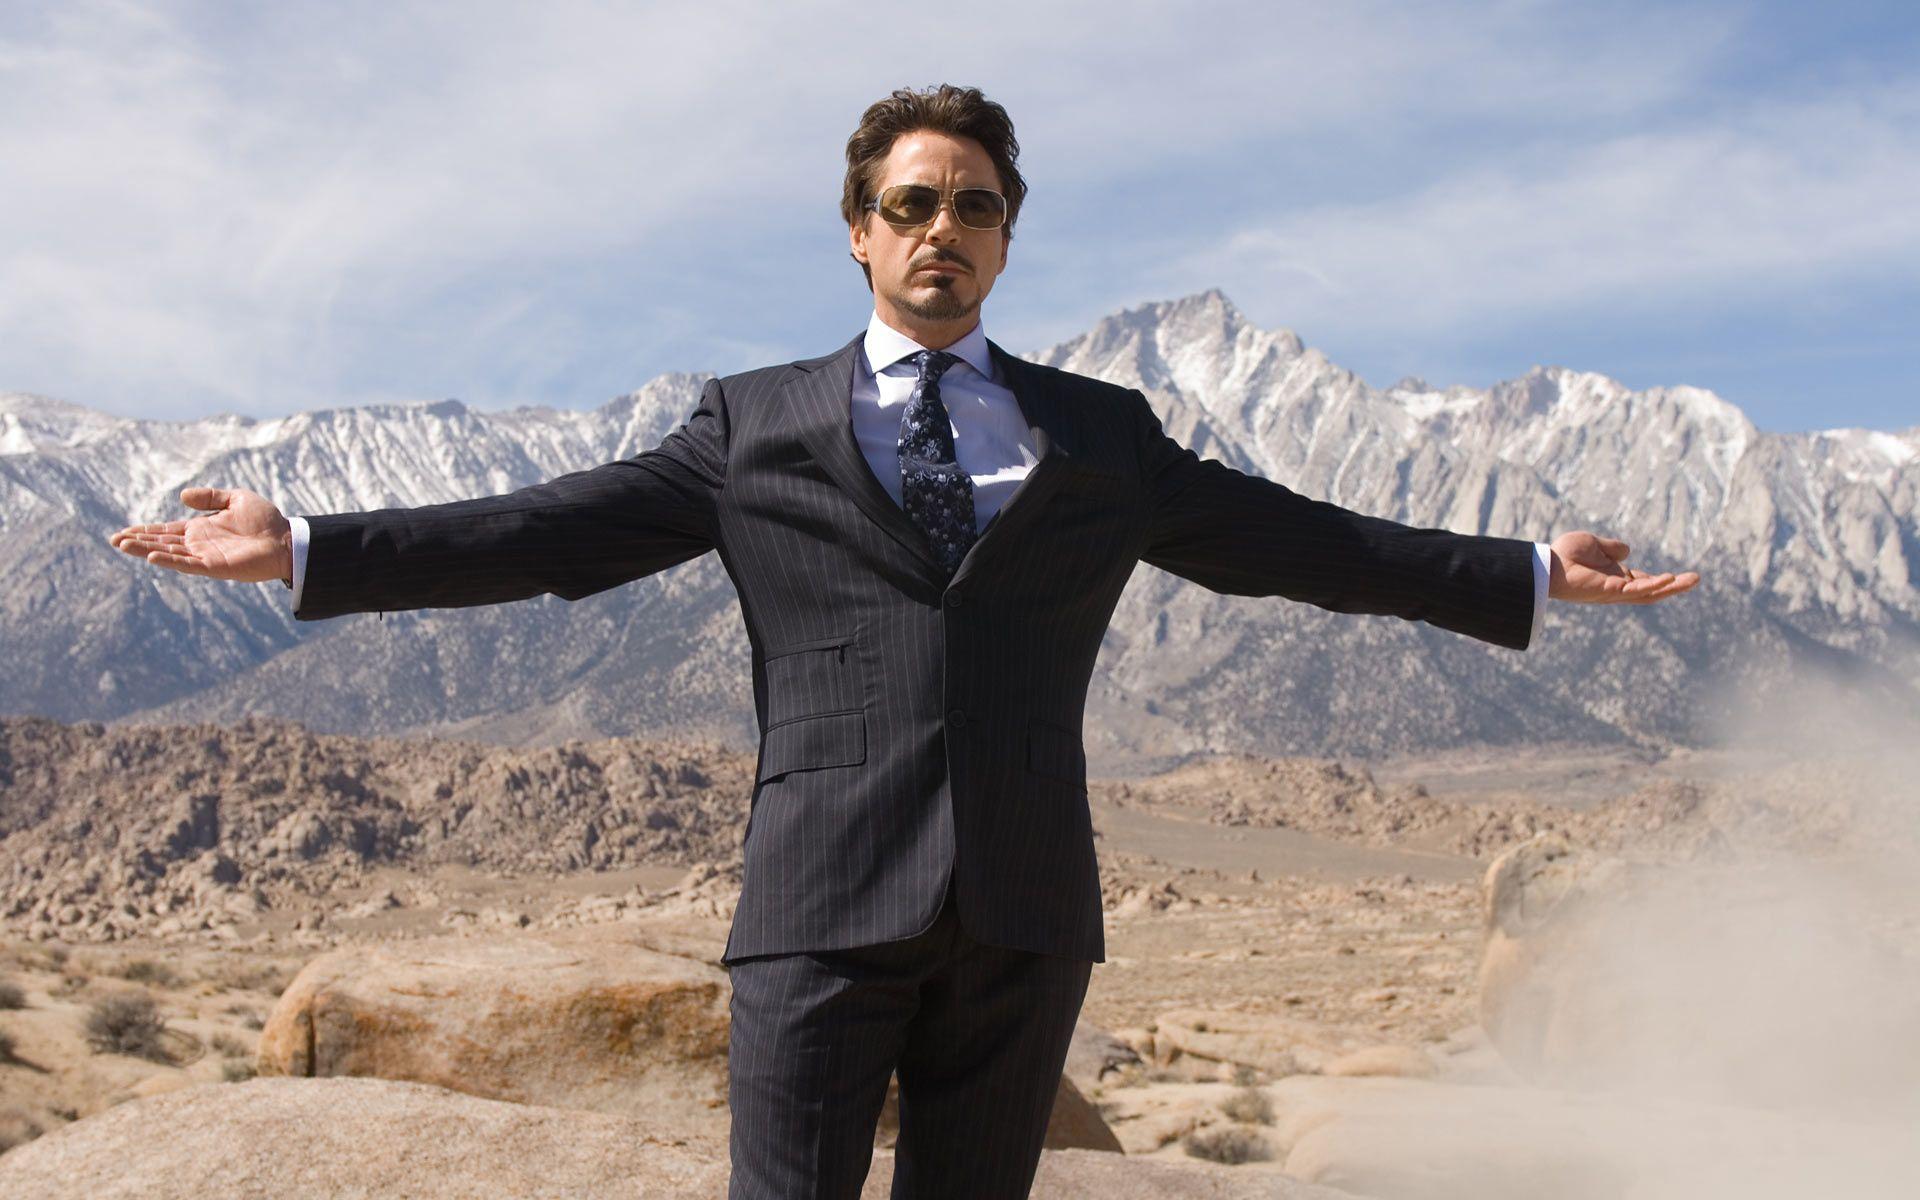 Robert Downey Jr Iron Man 3 wallpaper. Actors HD Wallpaper